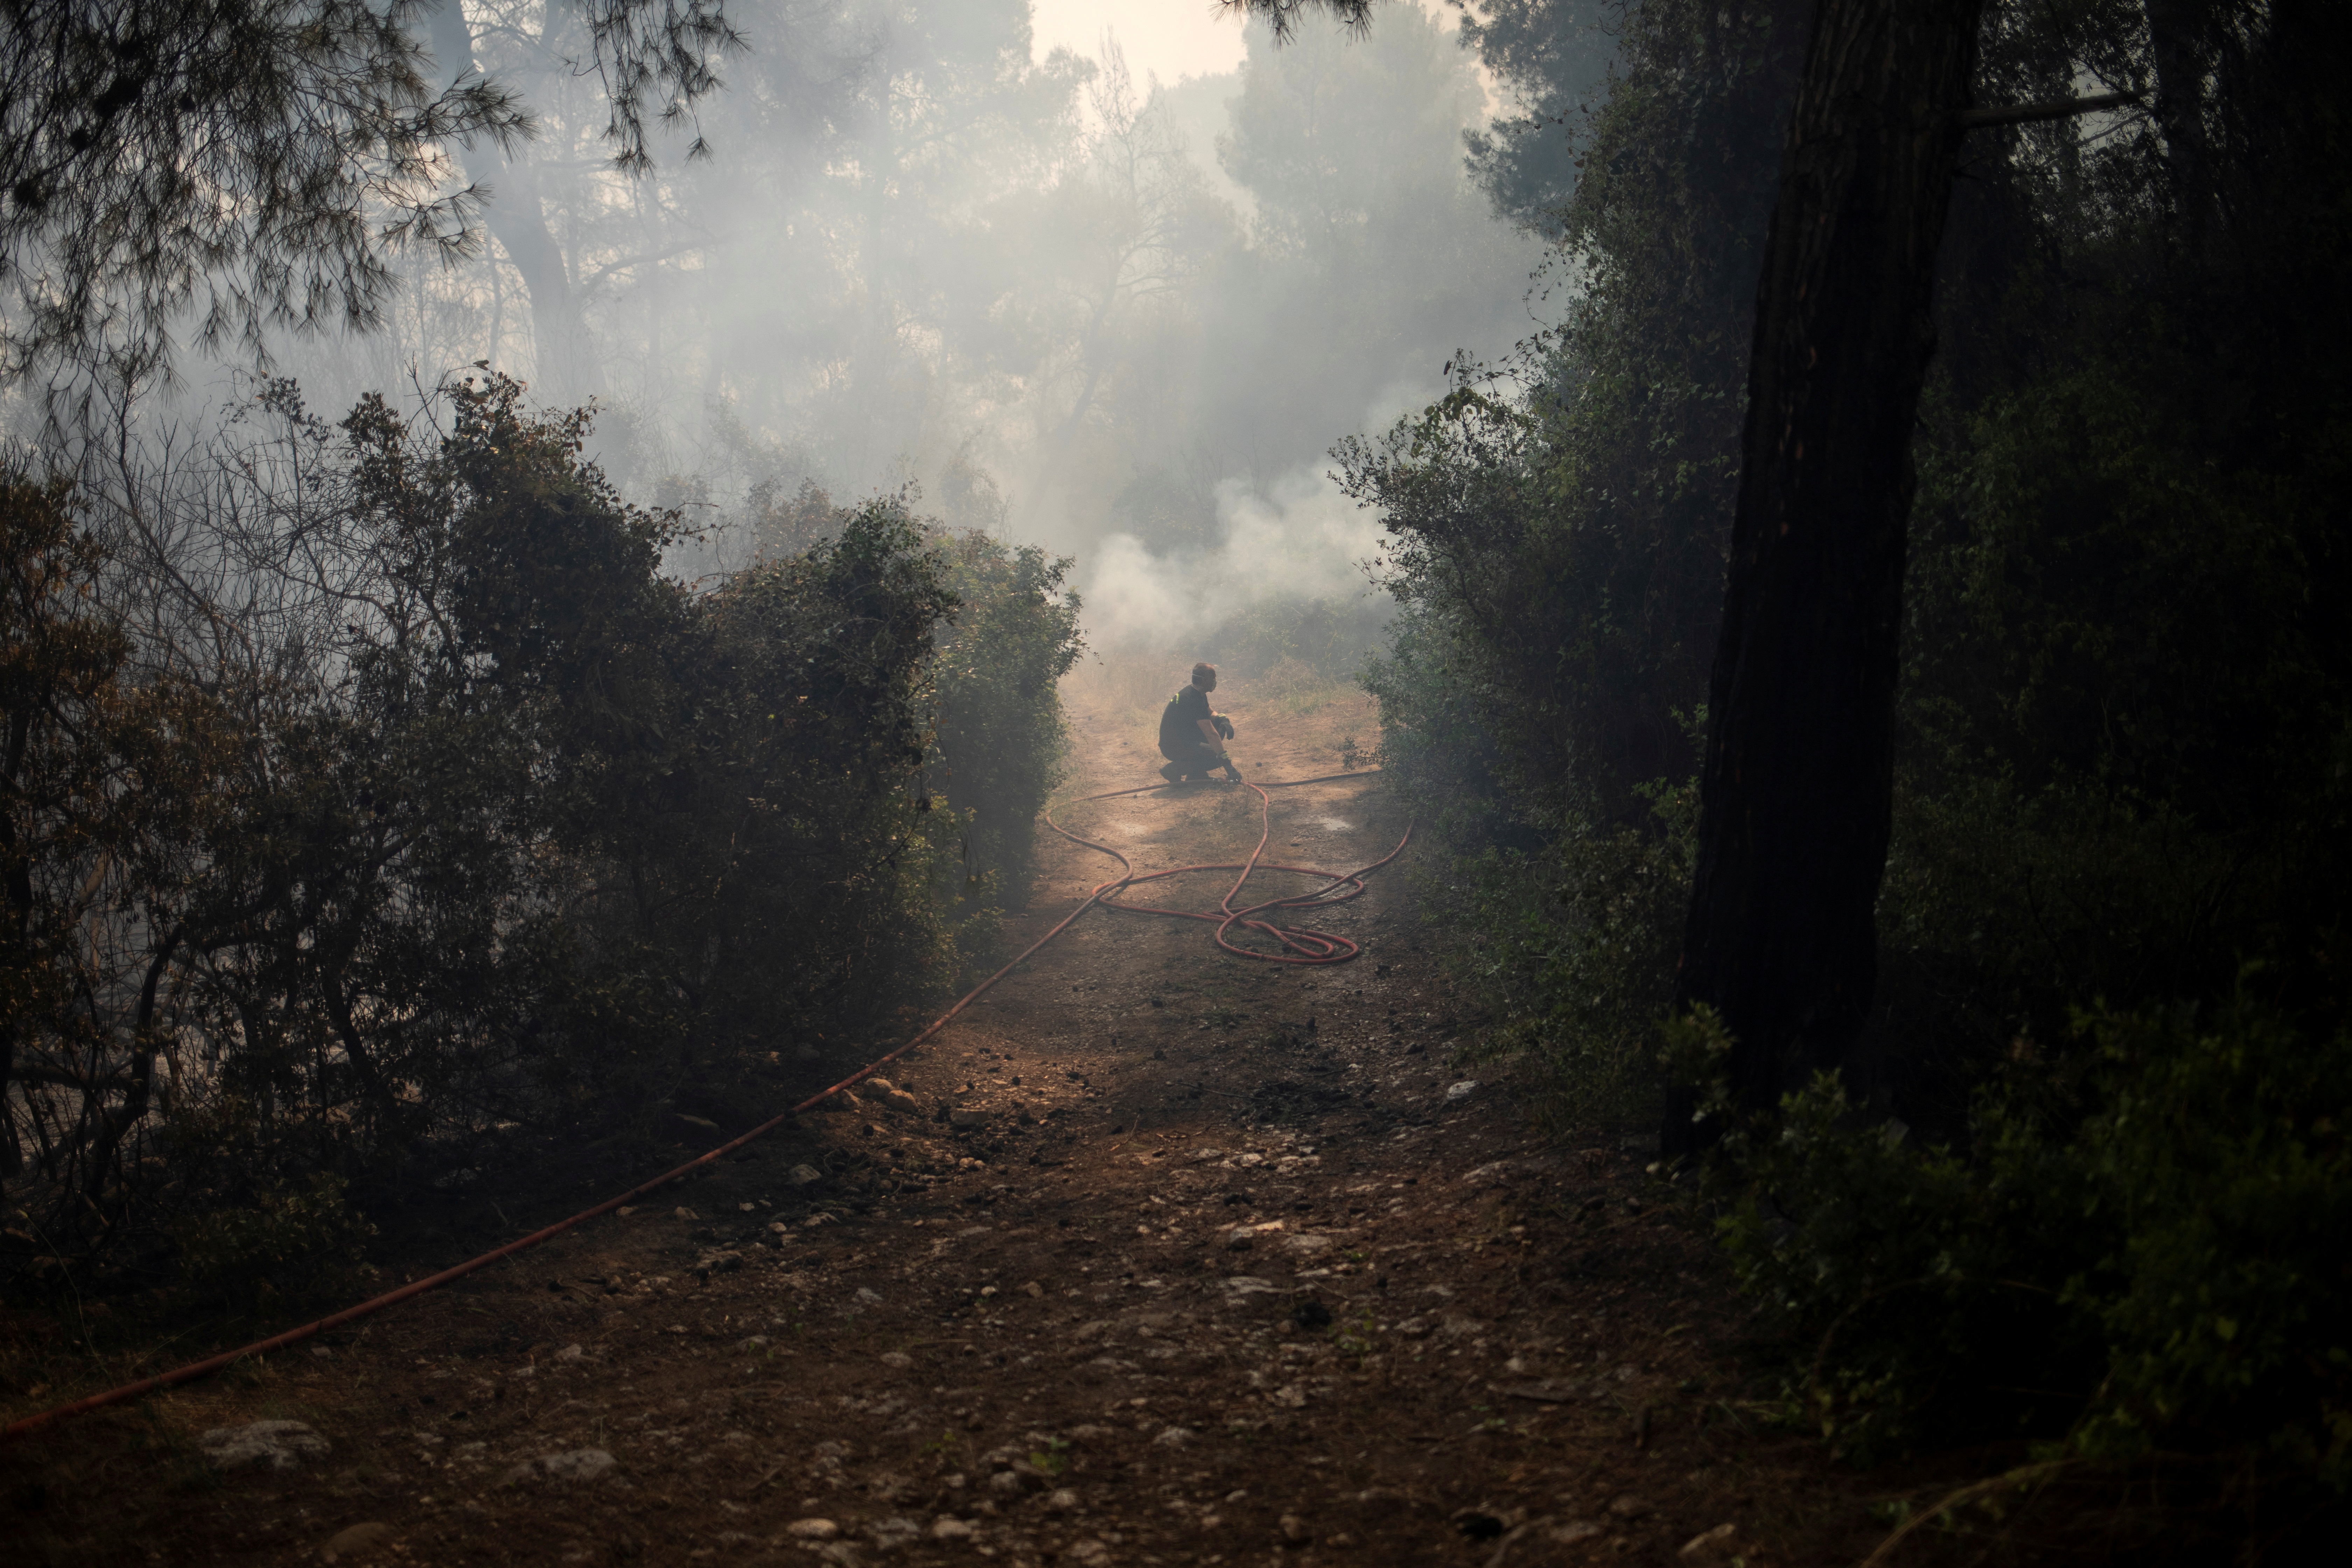 Wildfire in the village of Mazi, near Corinth, Greece